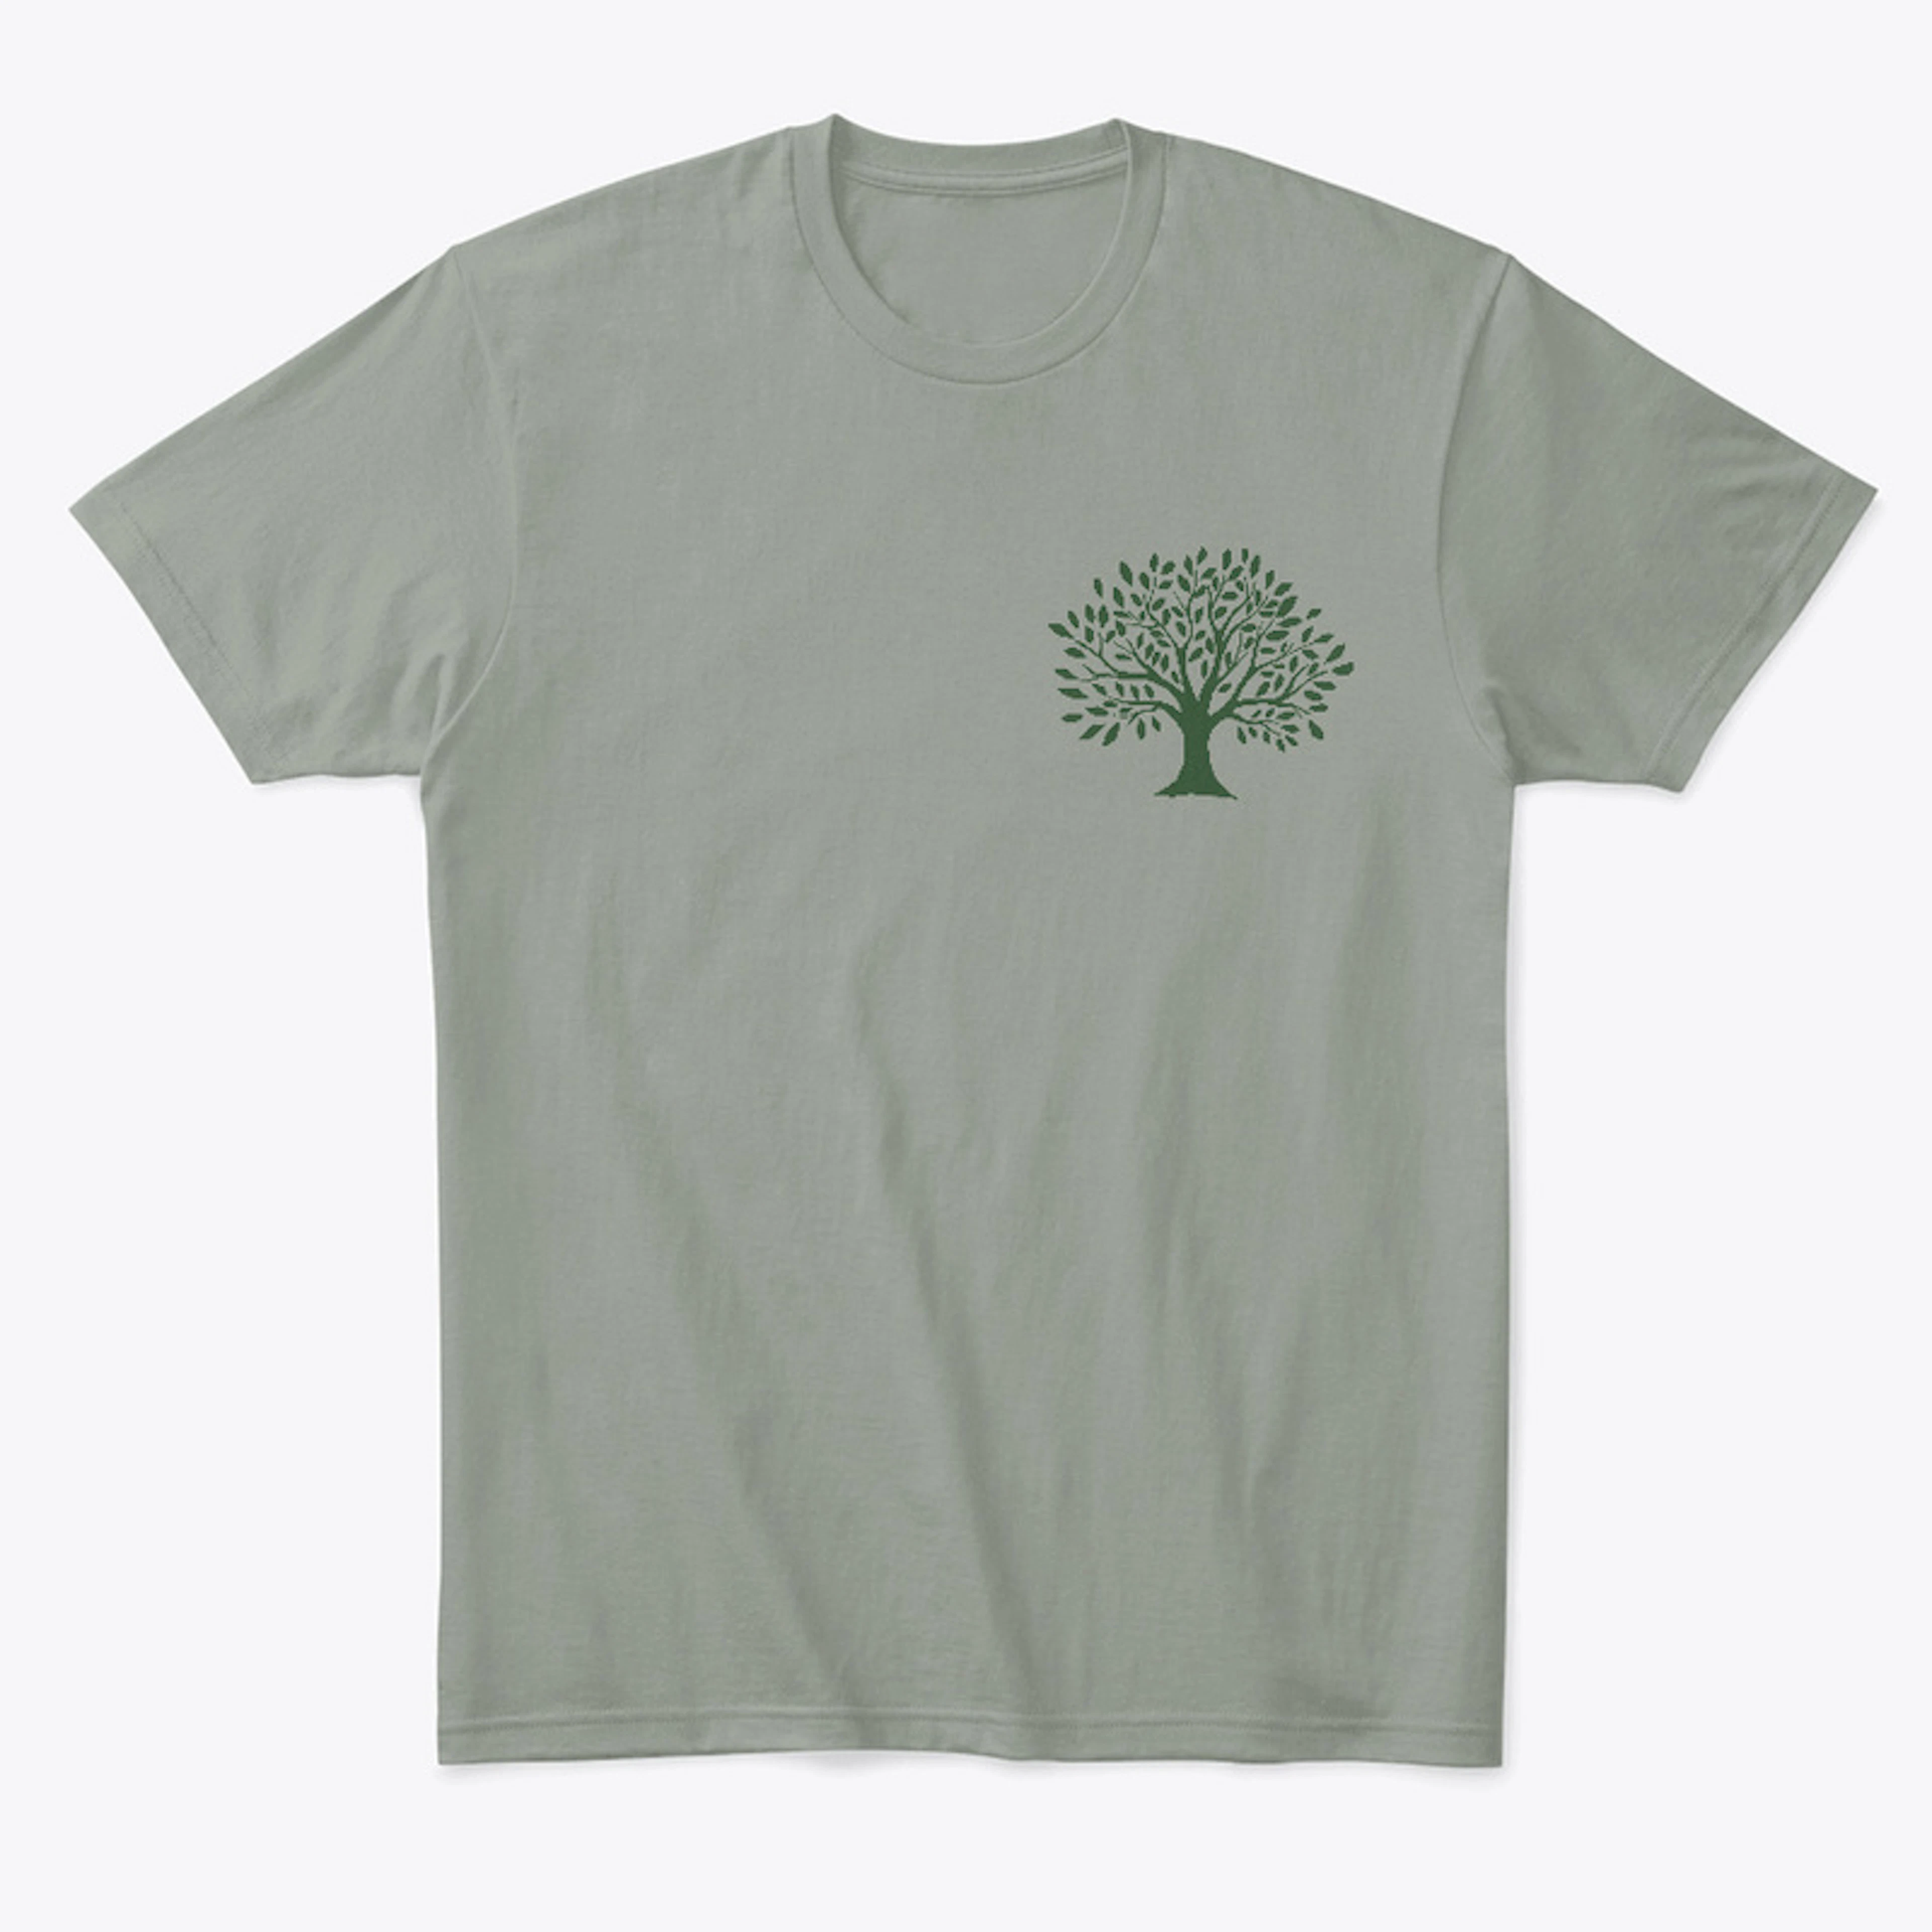 Plant a Tree Shirt